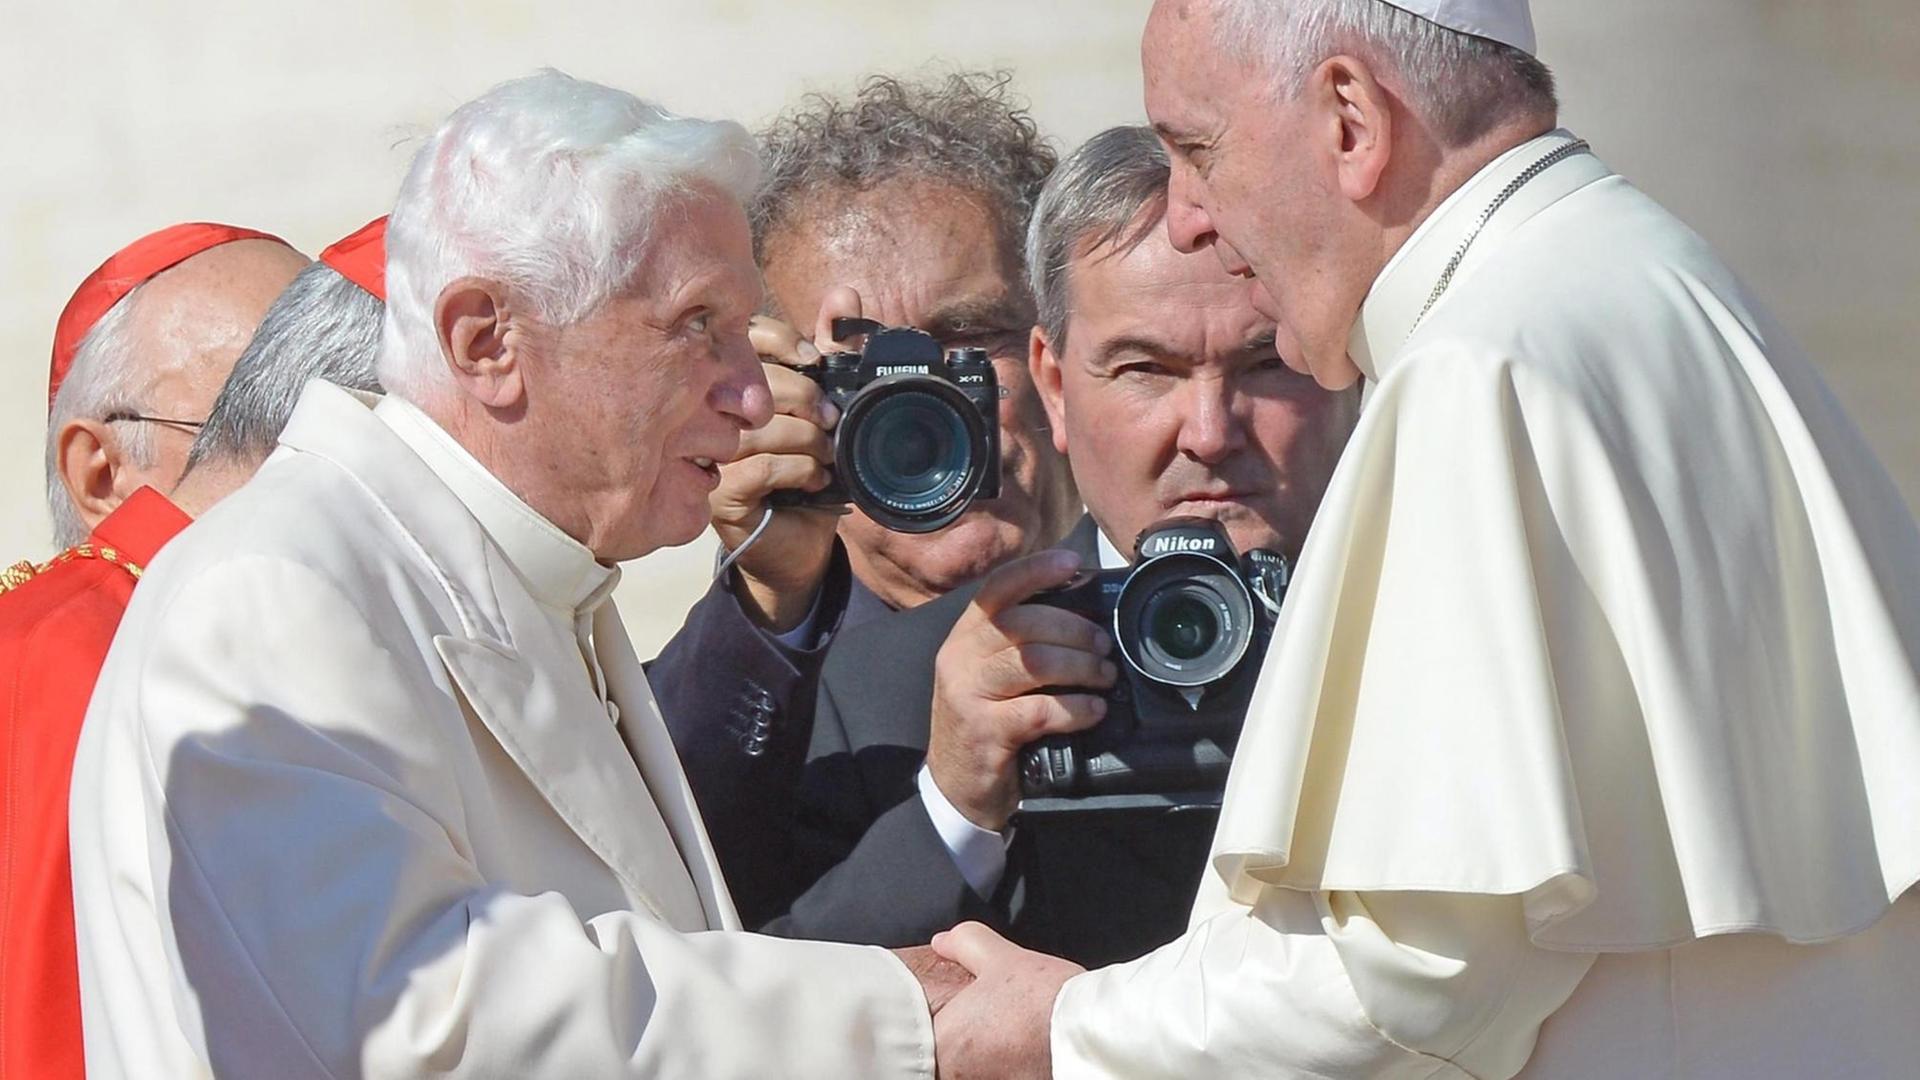 Papst Franziskus und Papst Benedikt XVI. geben einander die Hand. Um sie herum stehen Fotografen.